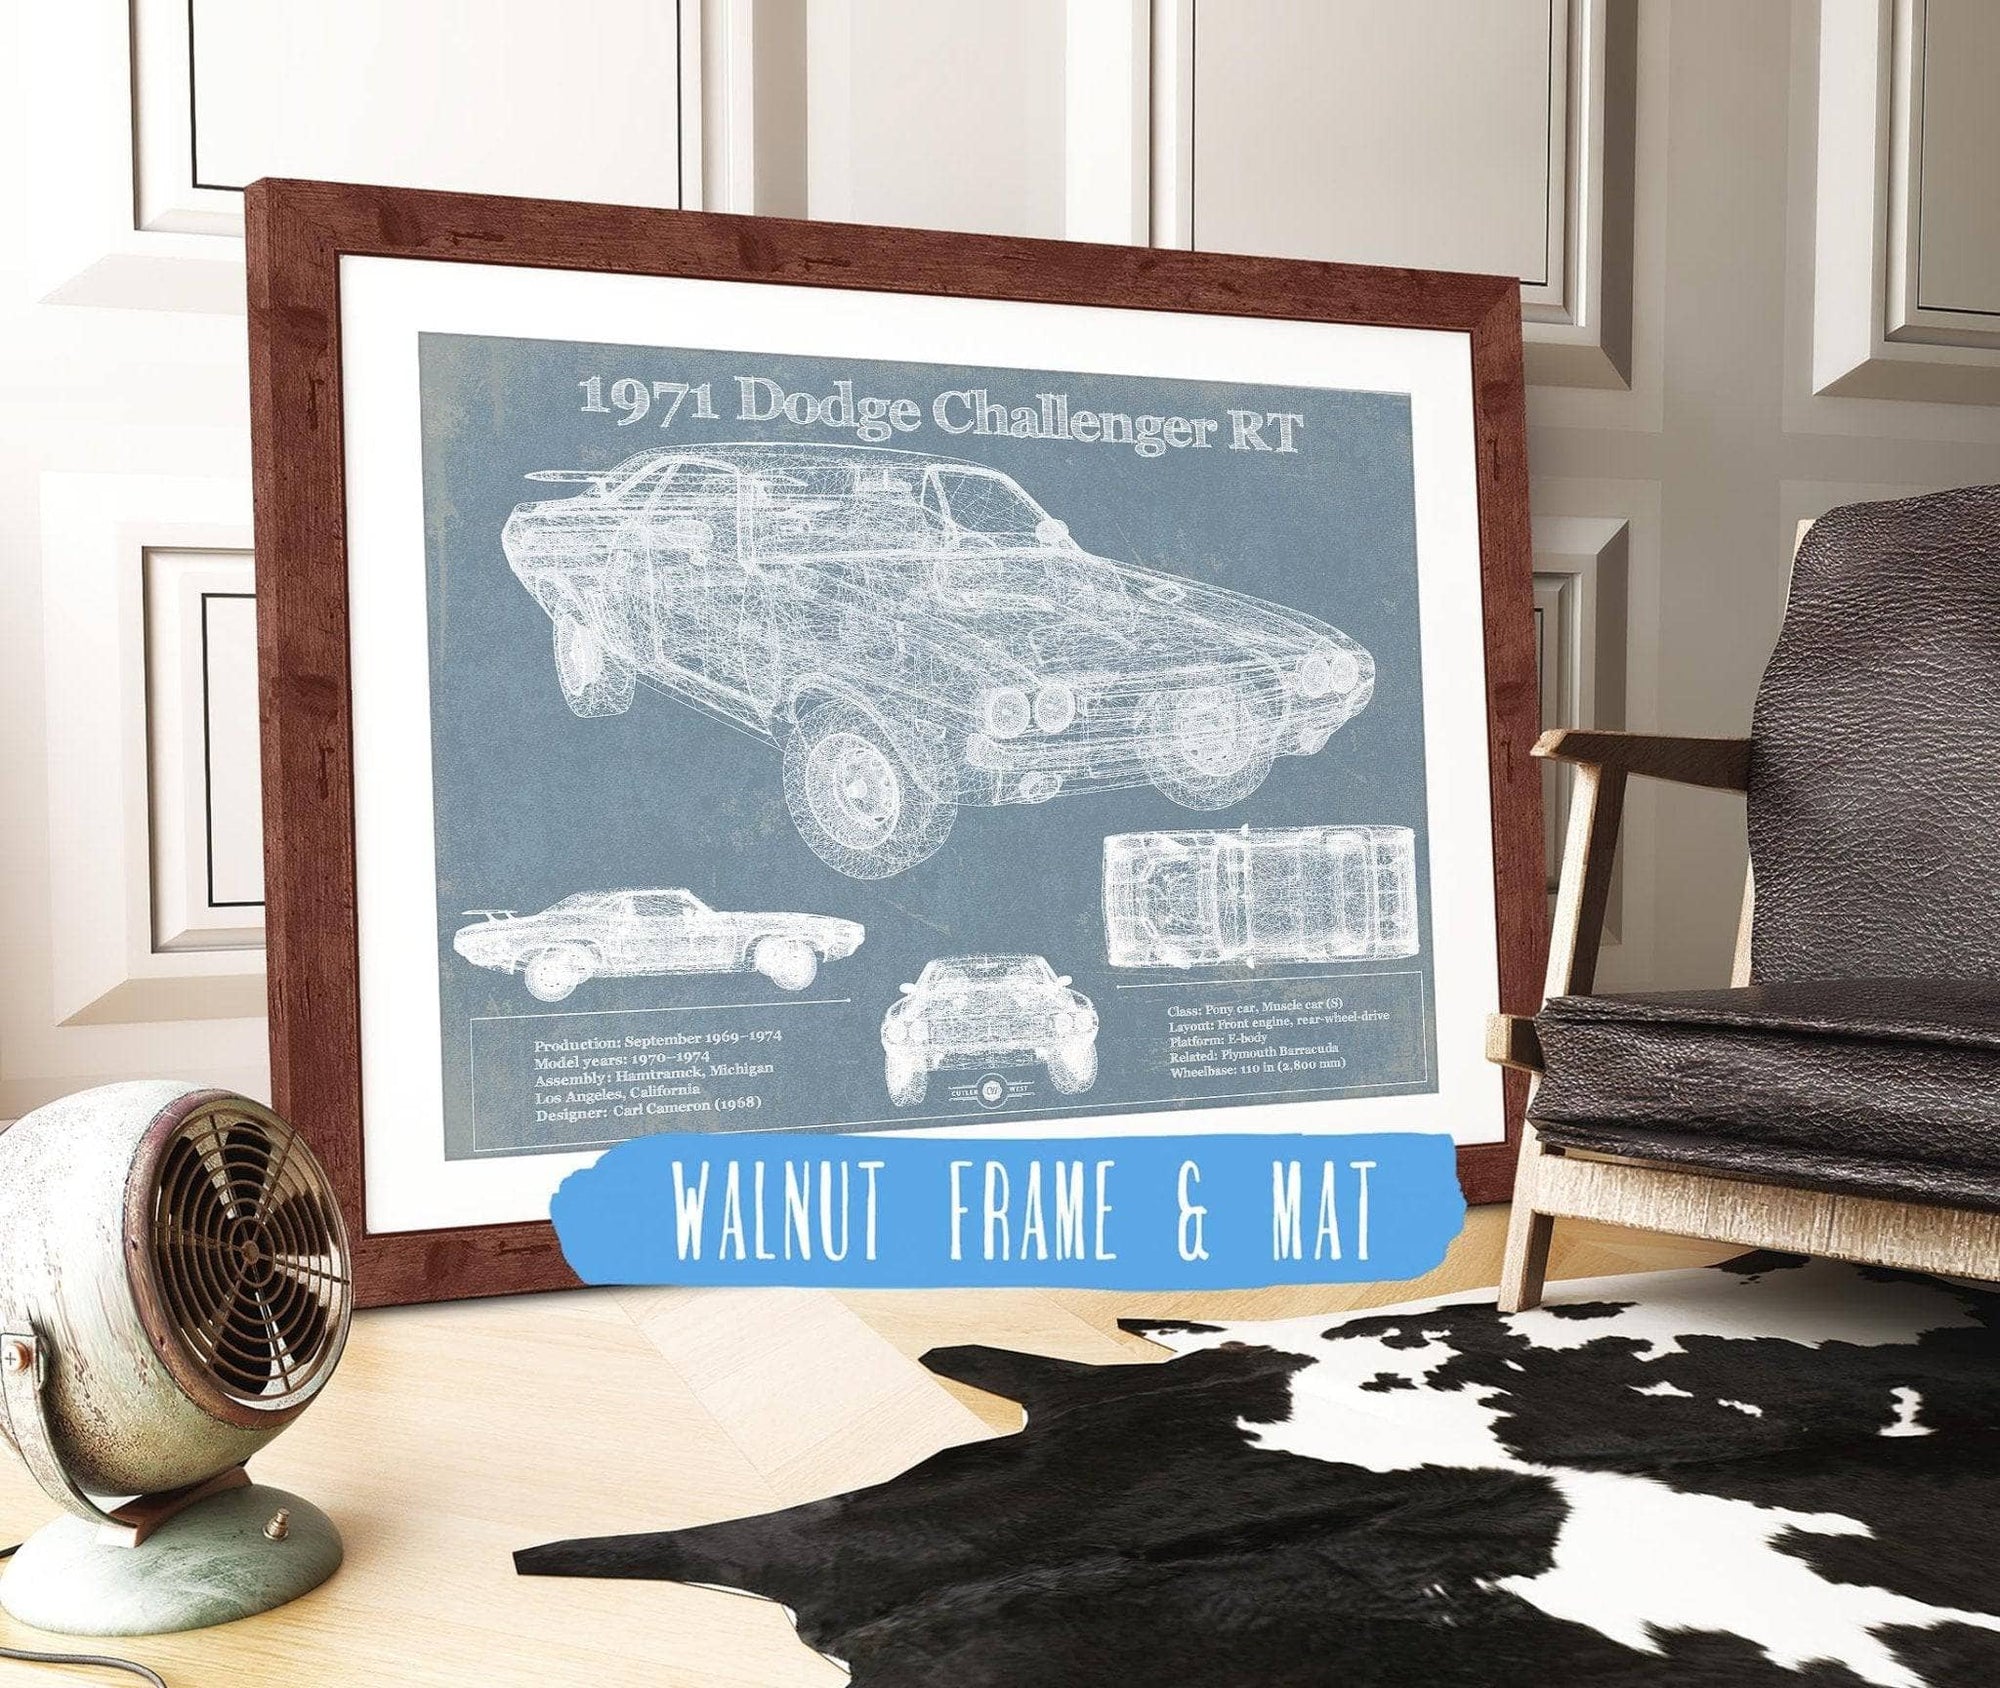 Cutler West Dodge Collection 14" x 11" / Walnut Frame & Mat 1971 Dodge Challenger Rt Car Blueprint Patent Original Art 933311096_19586